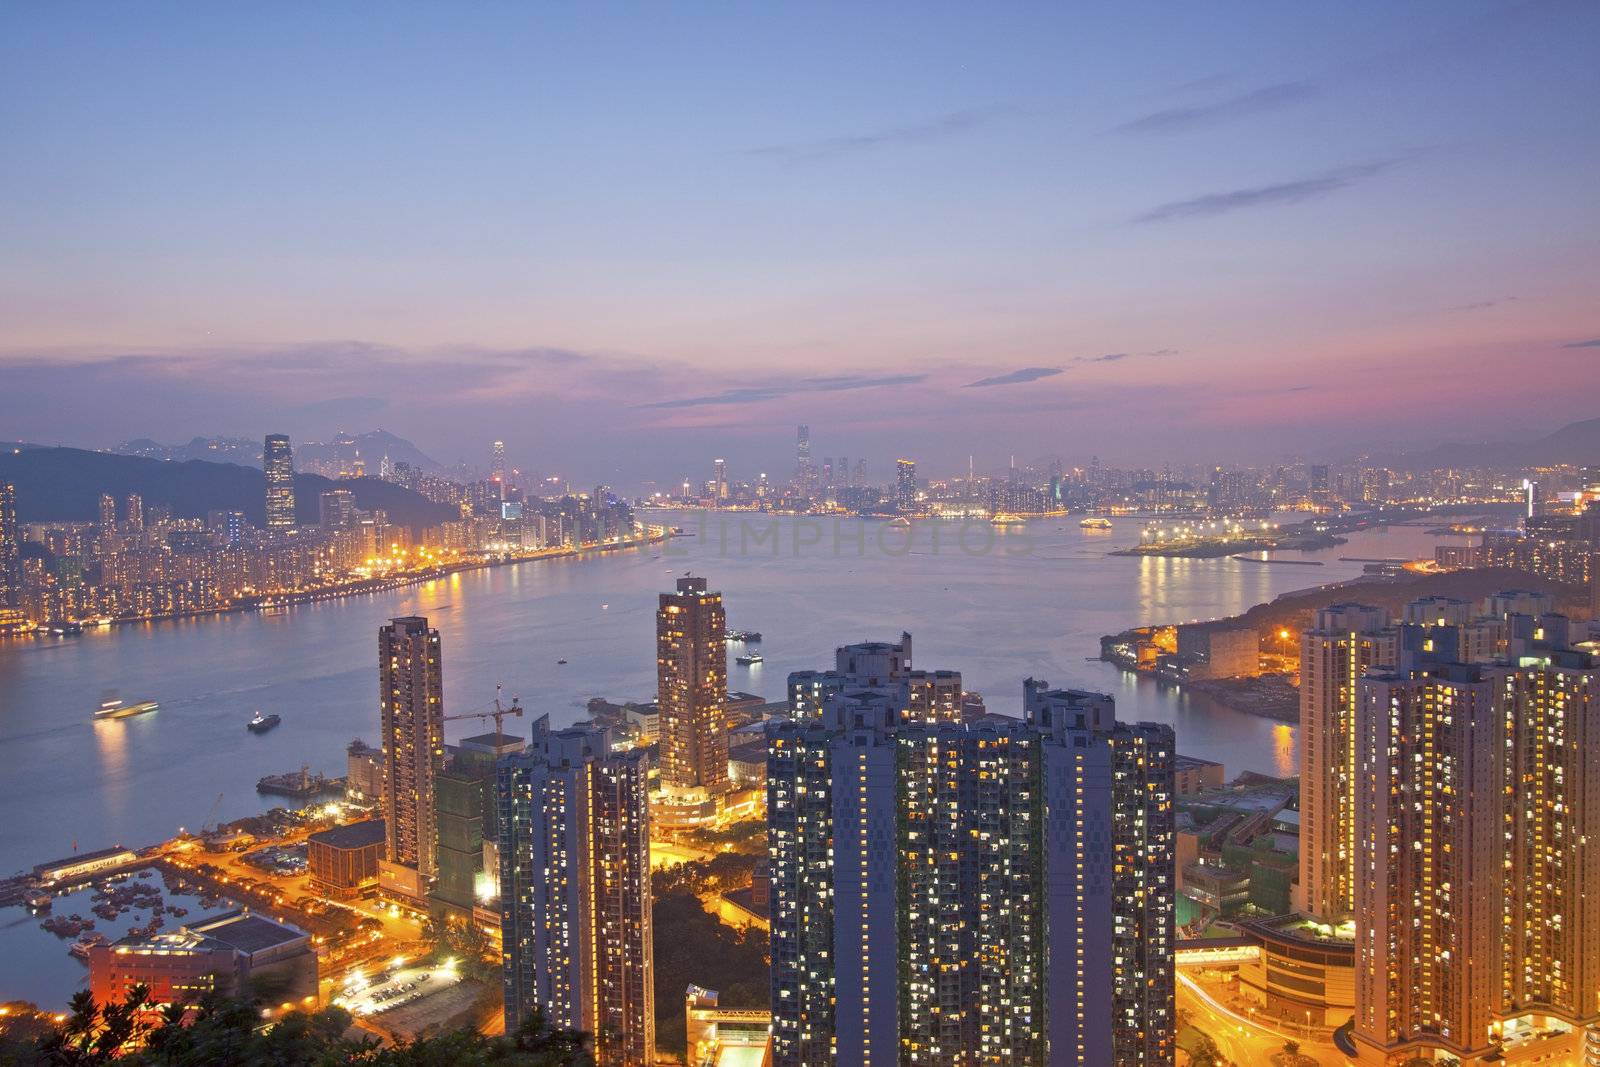 Hong Kong night view by kawing921